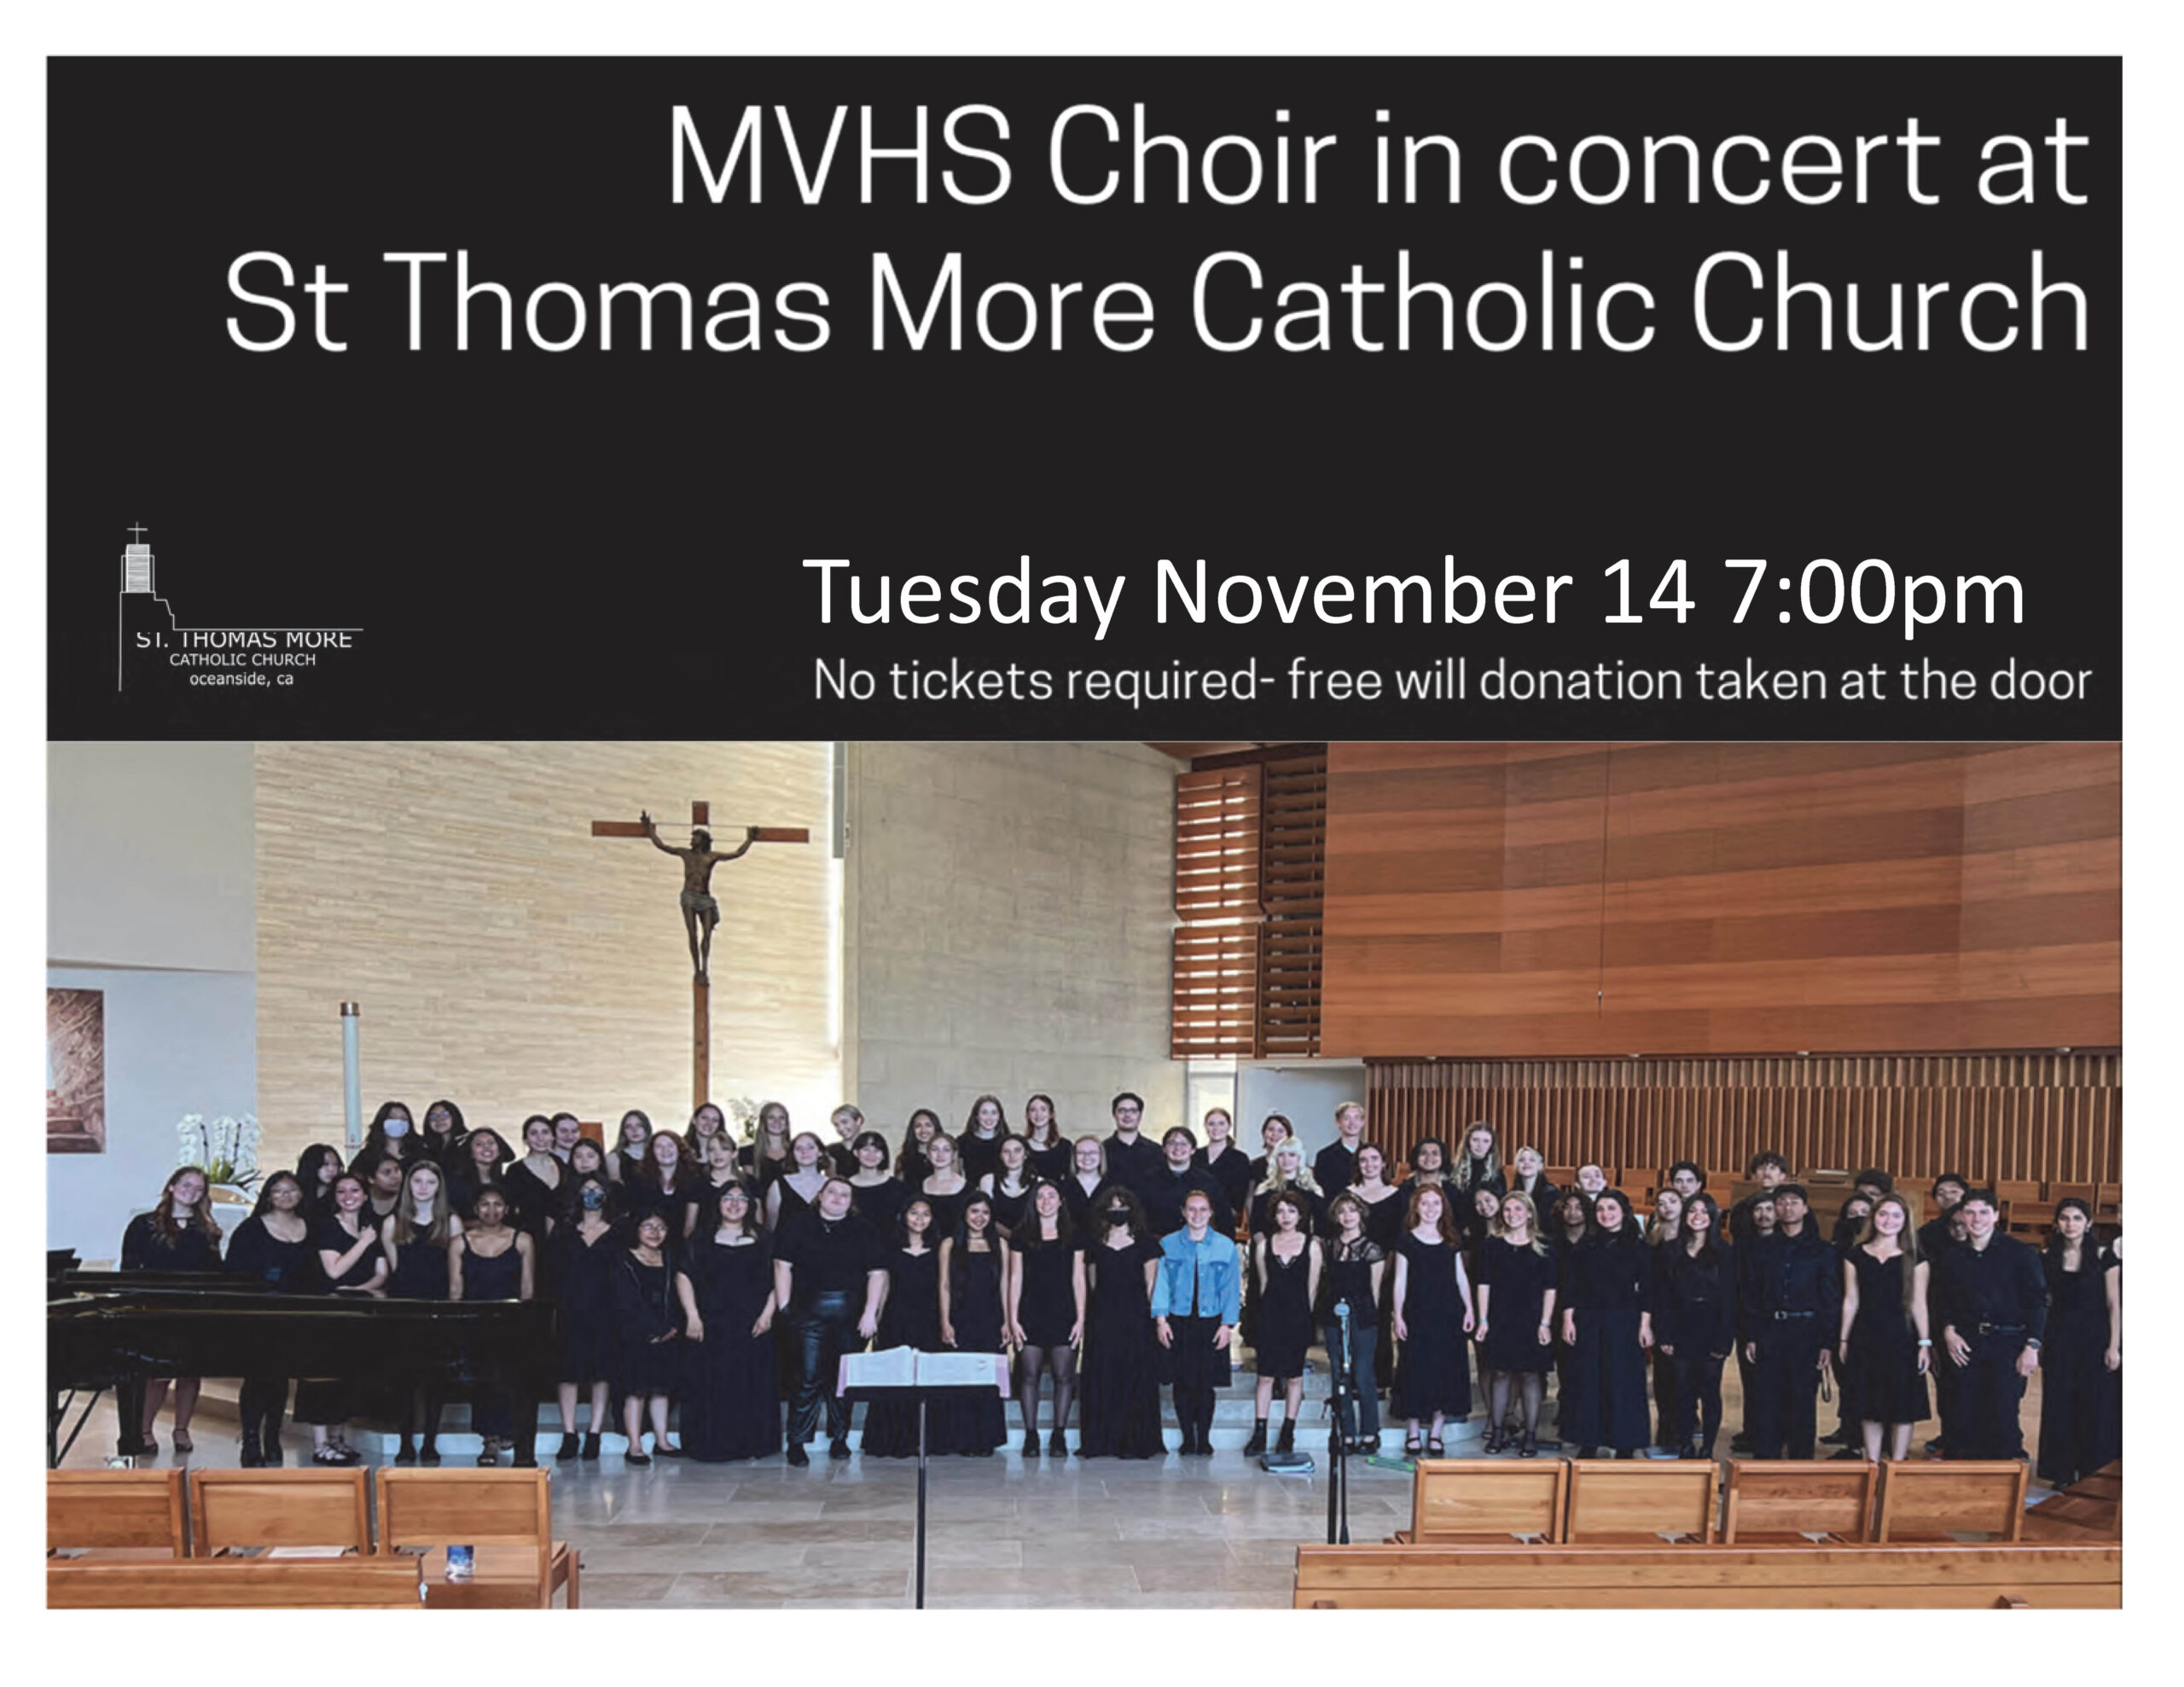 MVHS Choir Concert, Tue, Nov 14, 7:00pm